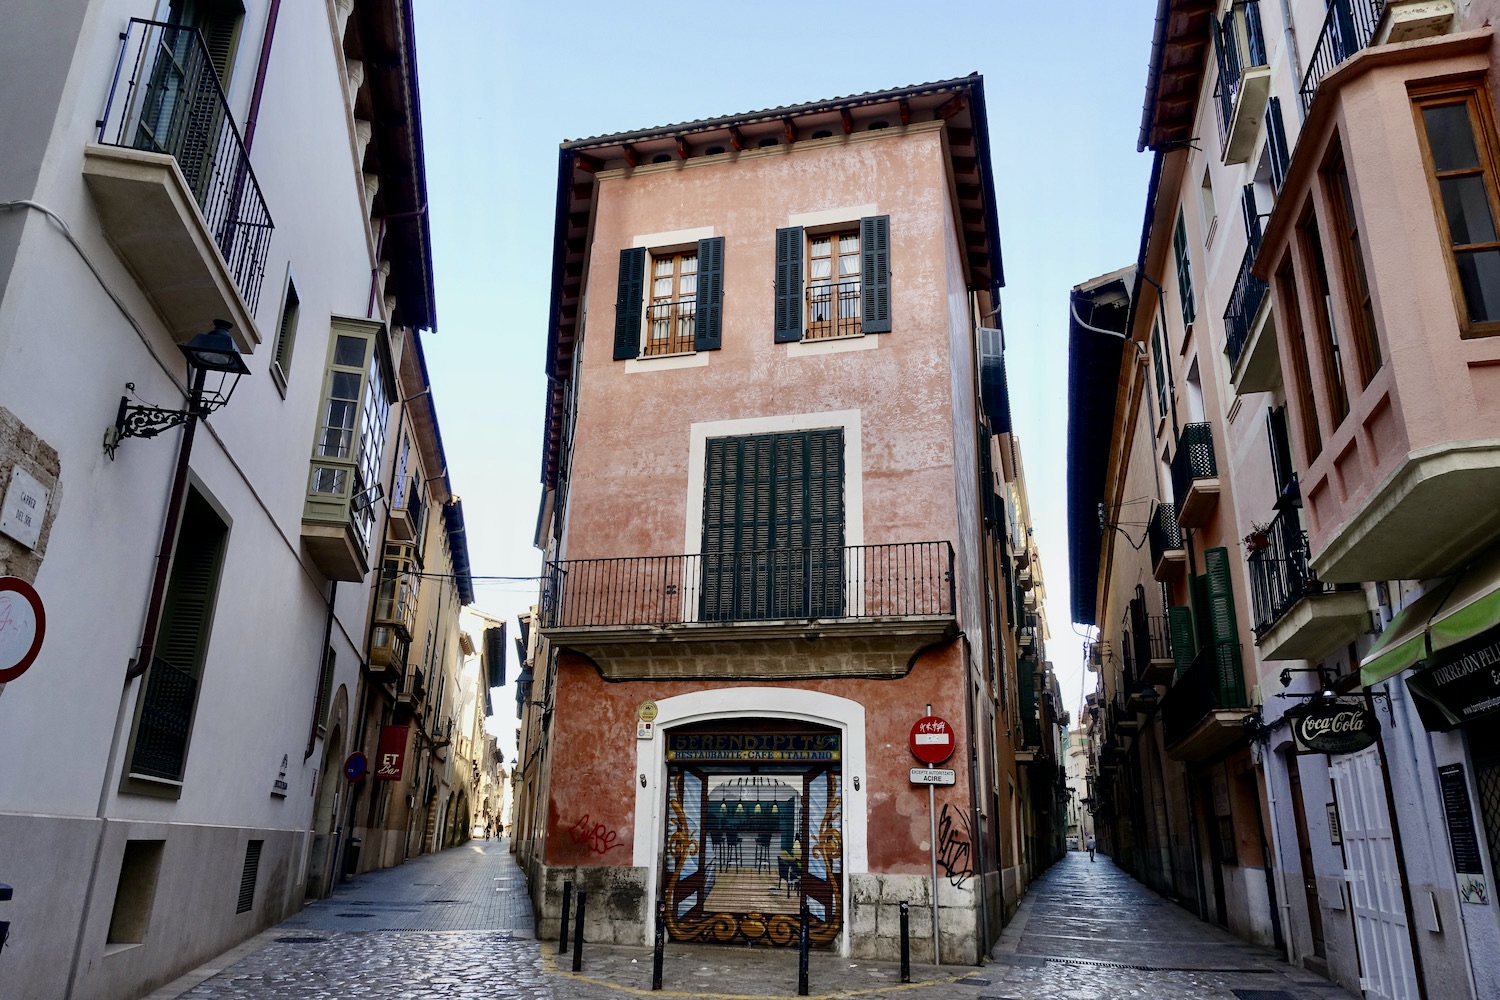 old town of Palma de Mallorca/Spain